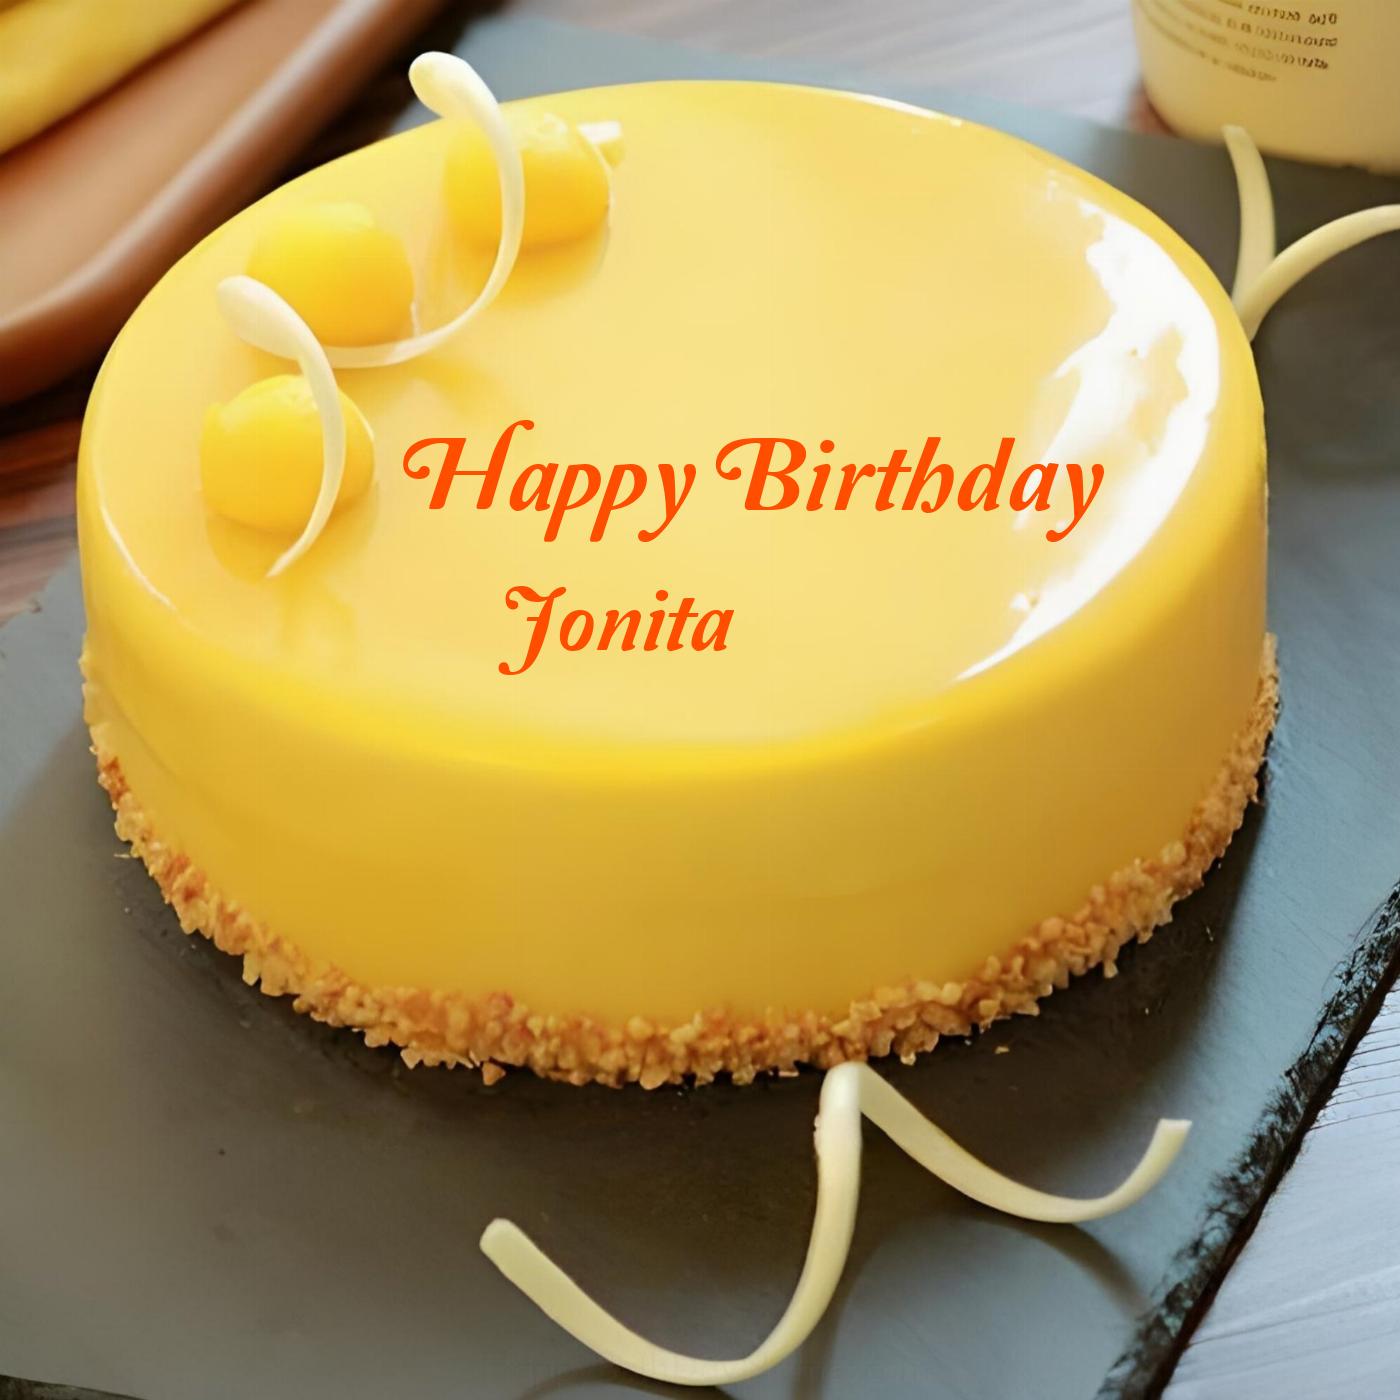 Happy Birthday Jonita Beautiful Yellow Cake